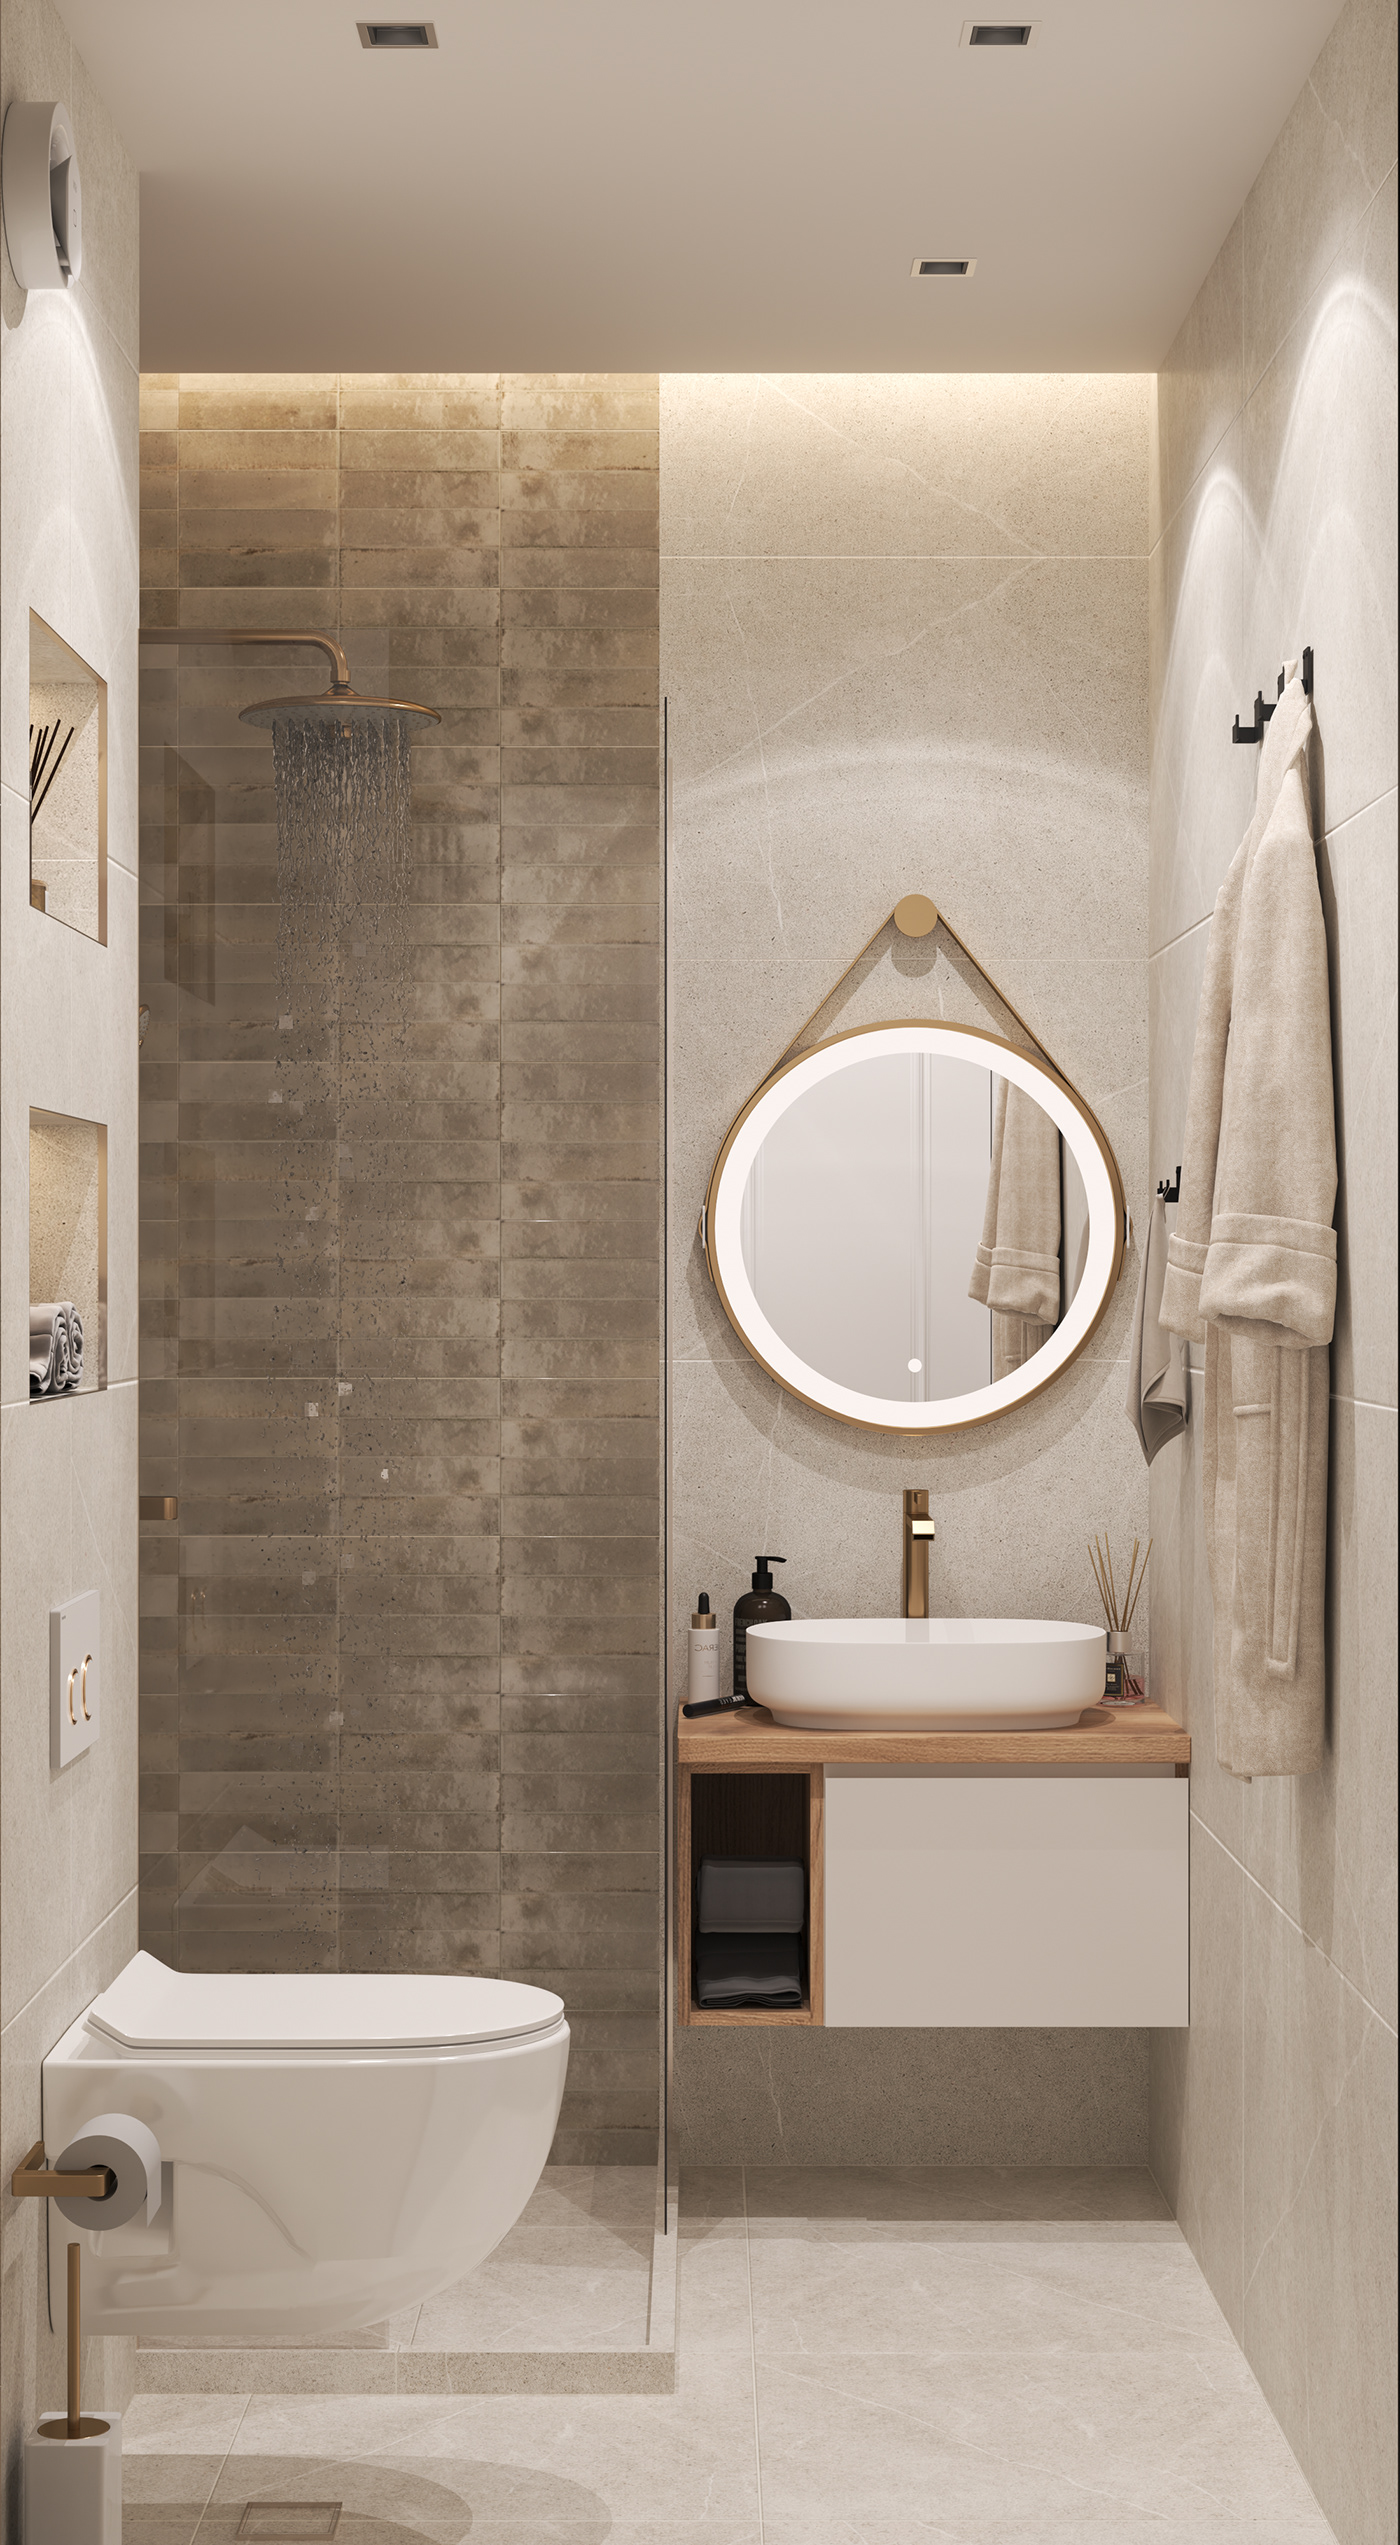 bathroom design interior design  visualization Render architecture modern 3ds max vray дизайн интерьера Визуализация интерьера